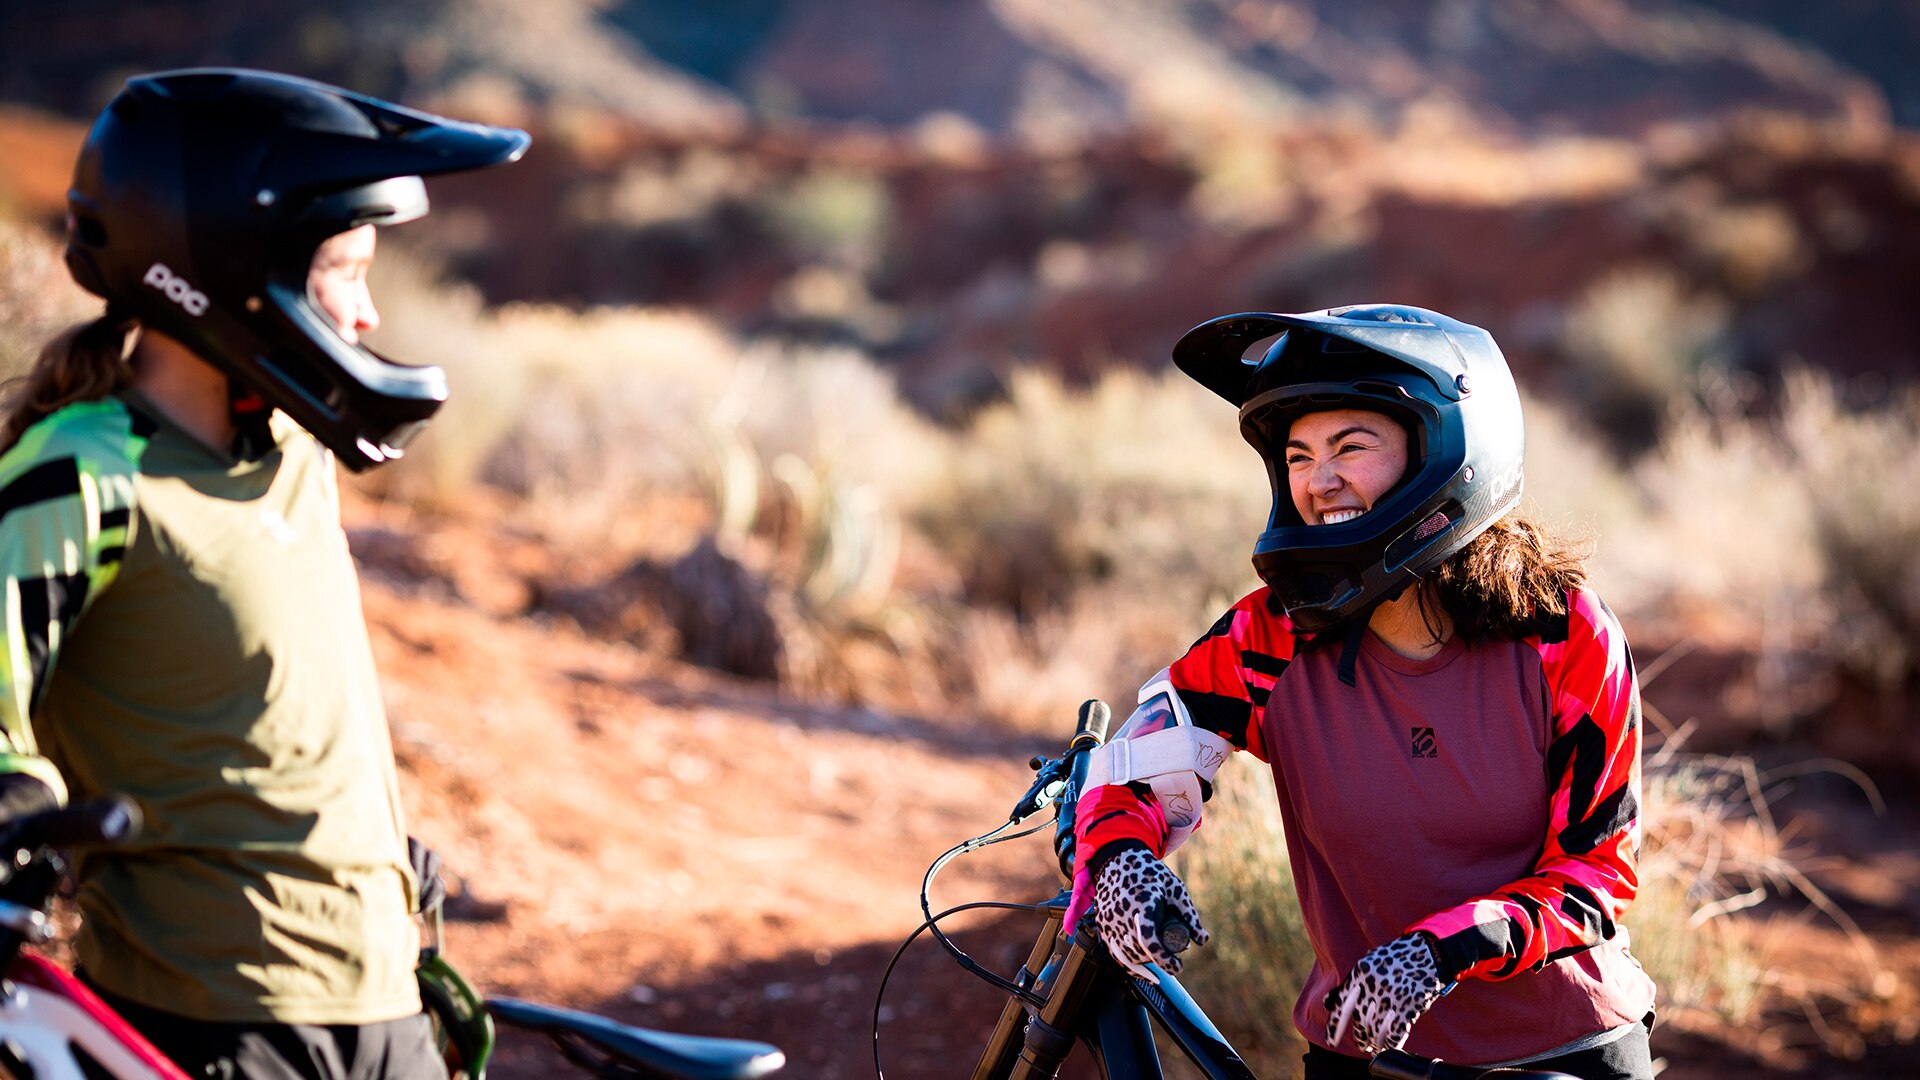 Samantha Soriano souriante, portant un casque Can-Am noir et un chandail rouge et pourpre, appuyée sur une bicyclette